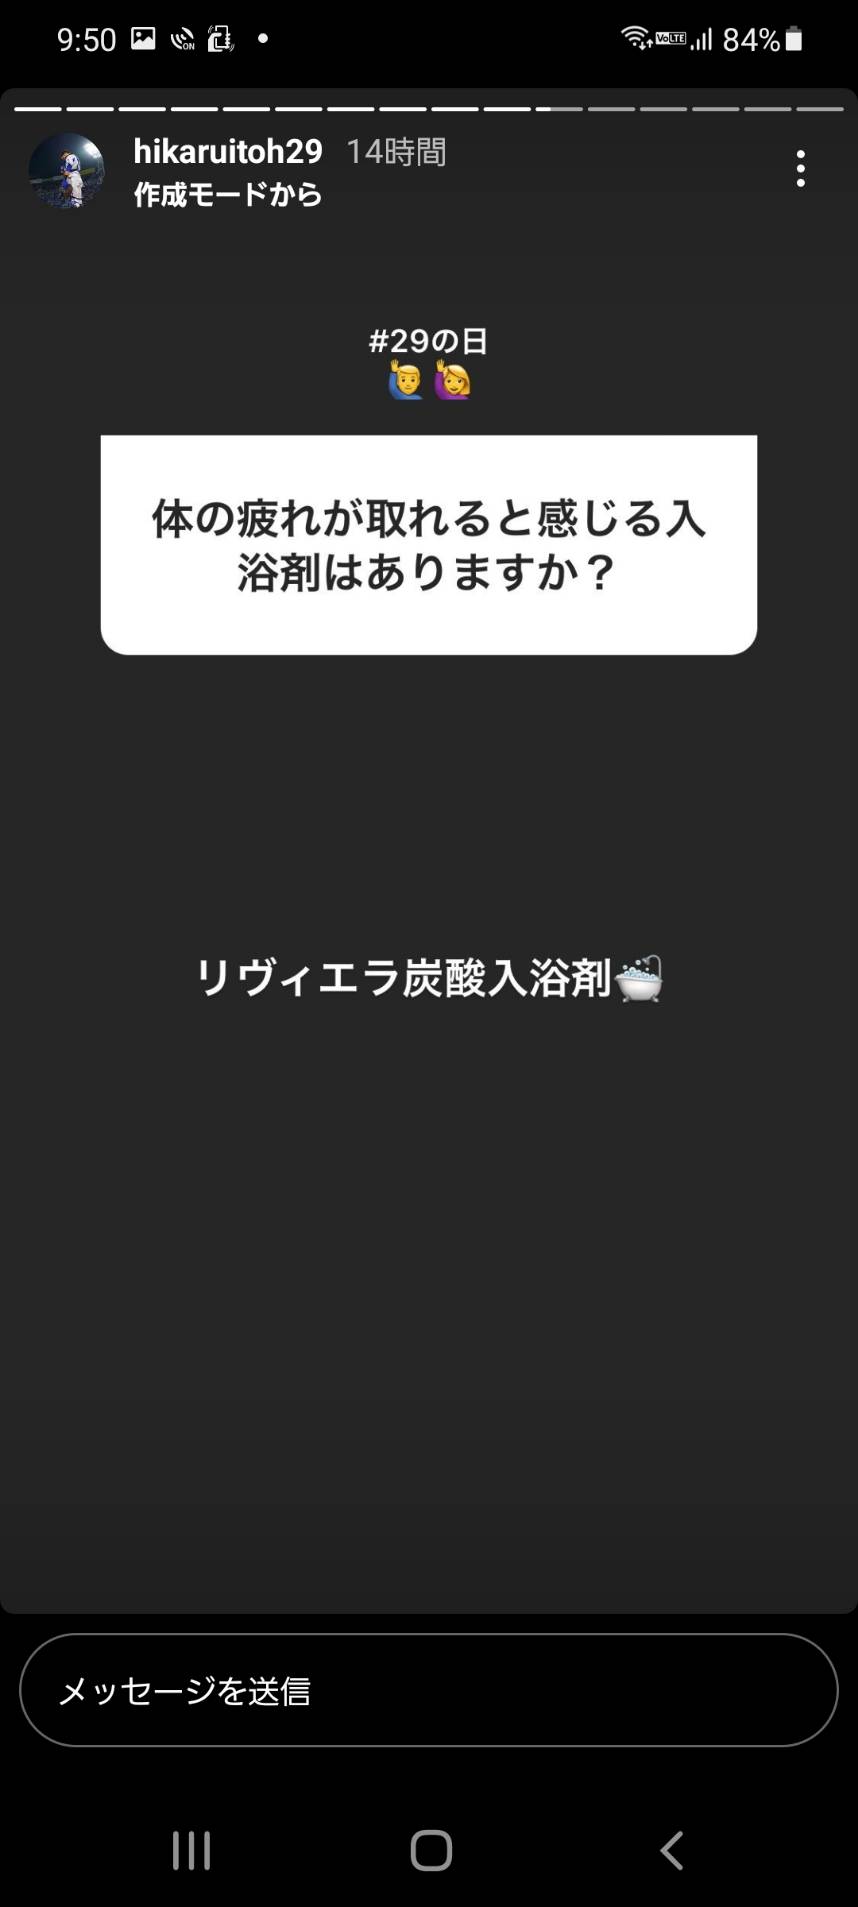 プロ野球 伊藤 光選手 インスタグラムの質問コーナーで入浴剤のことを答えてくださいました。